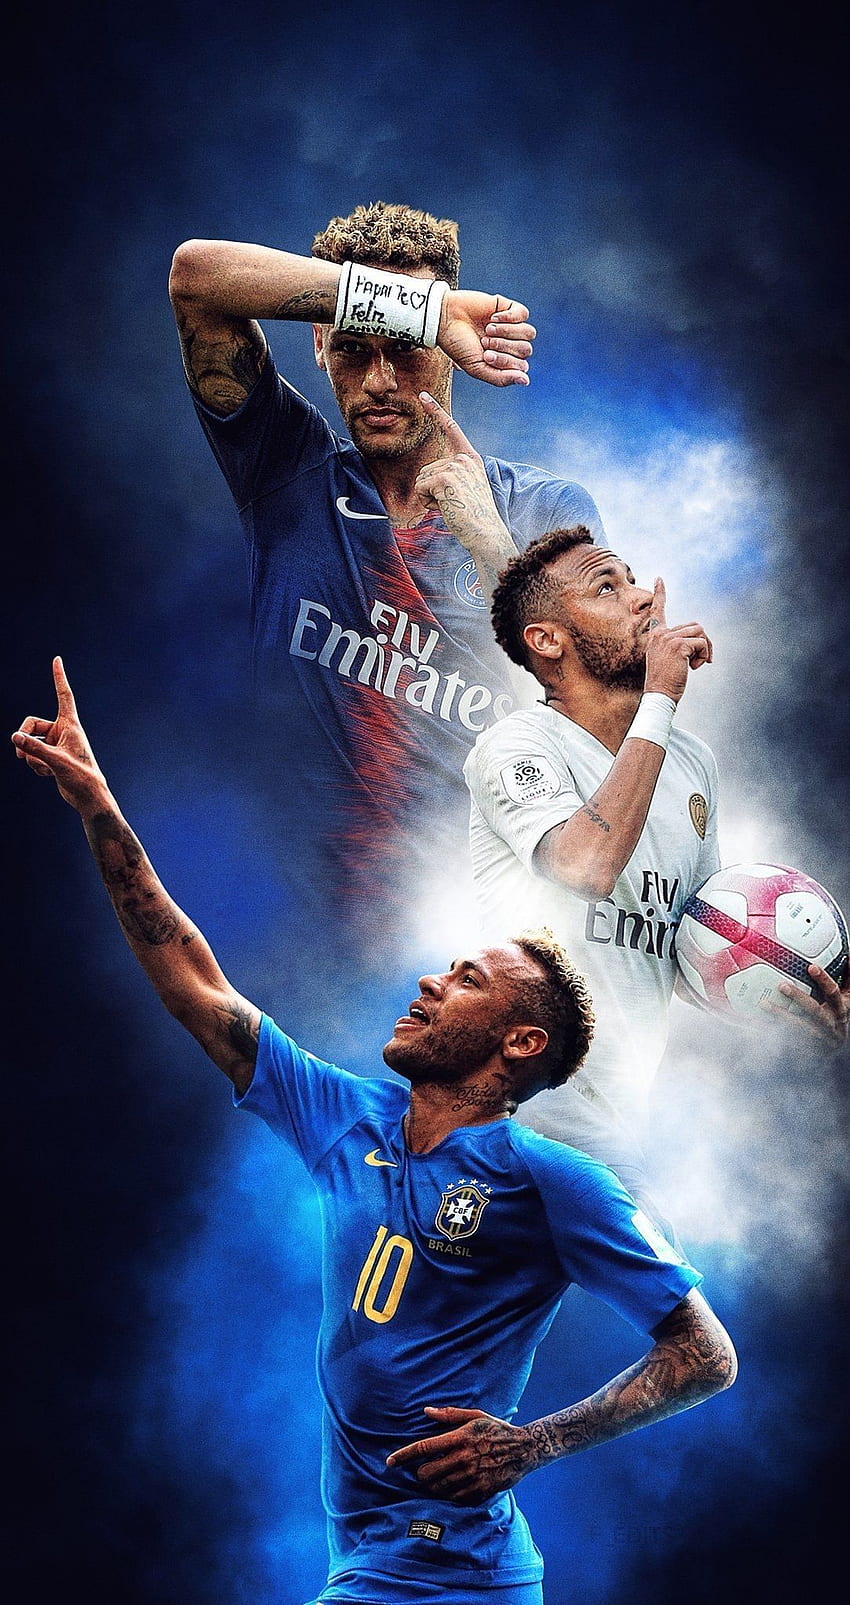 Hãy cập nhật màn hình điện thoại của bạn với hình nền Neymar Jr Brazil vô cùng ấn tượng! Với độ phân giải cao, hình ảnh chắc chắn sẽ khiến bạn cảm thấy phấn khích với tình yêu bóng đá của mình.